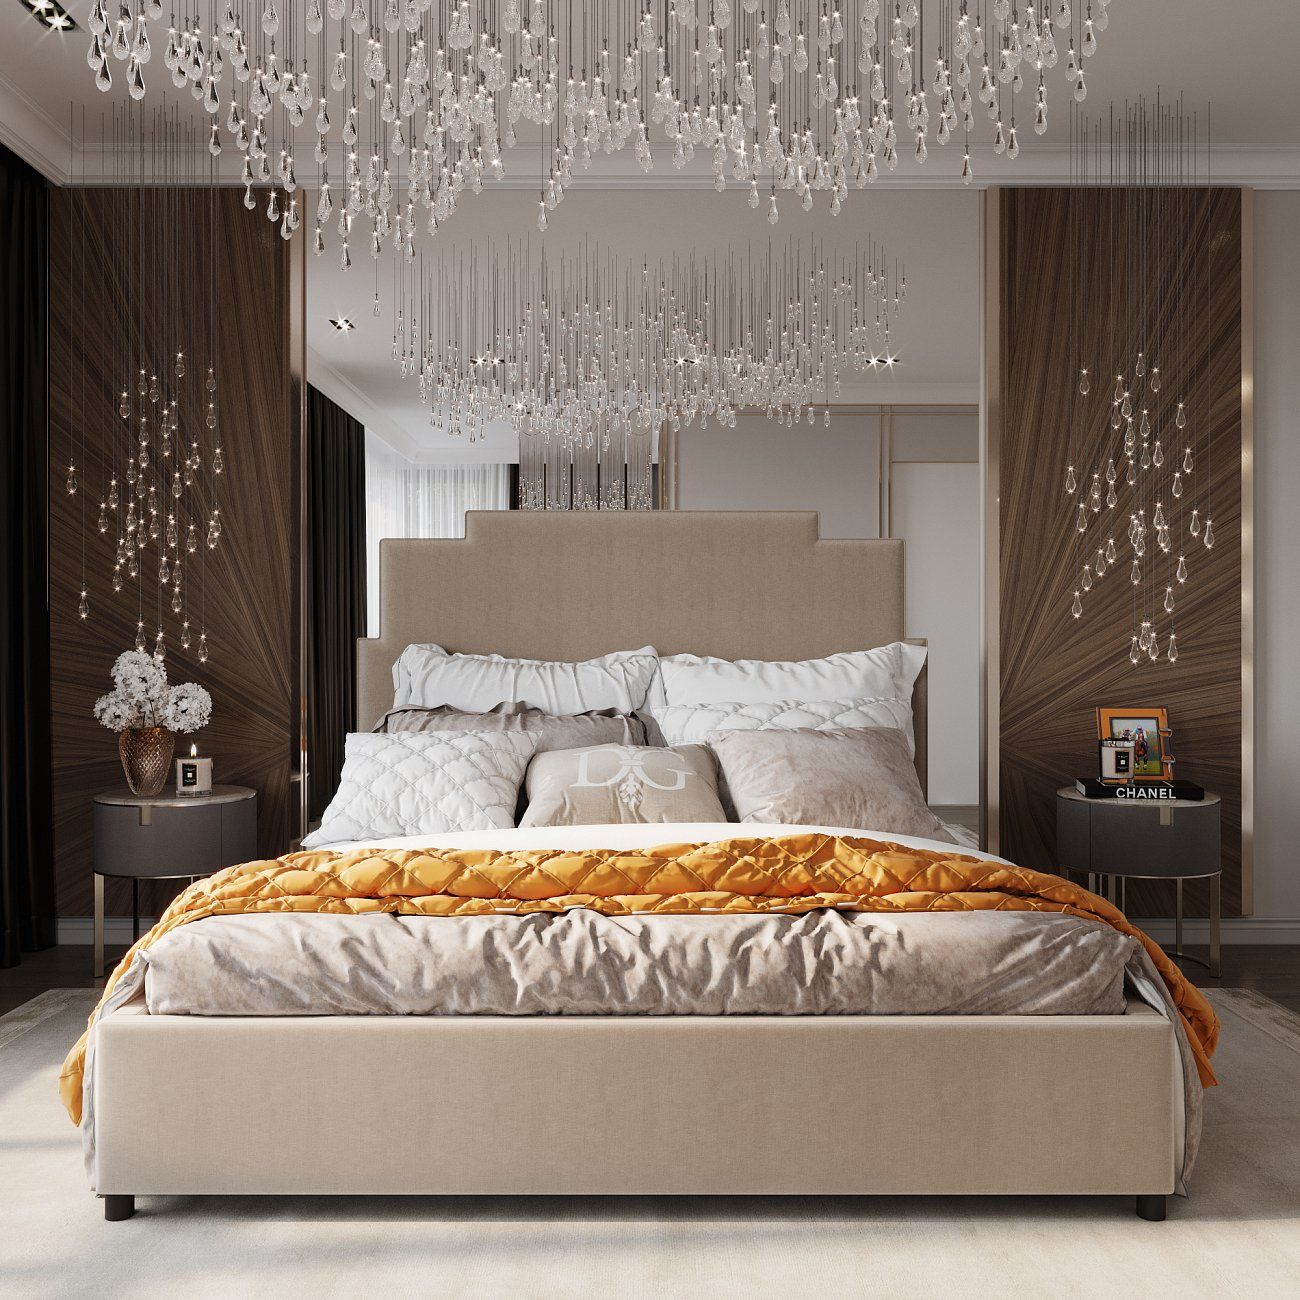 Кровать двуспальная 160x200 см розовая Paxton Bed Dusty Rose